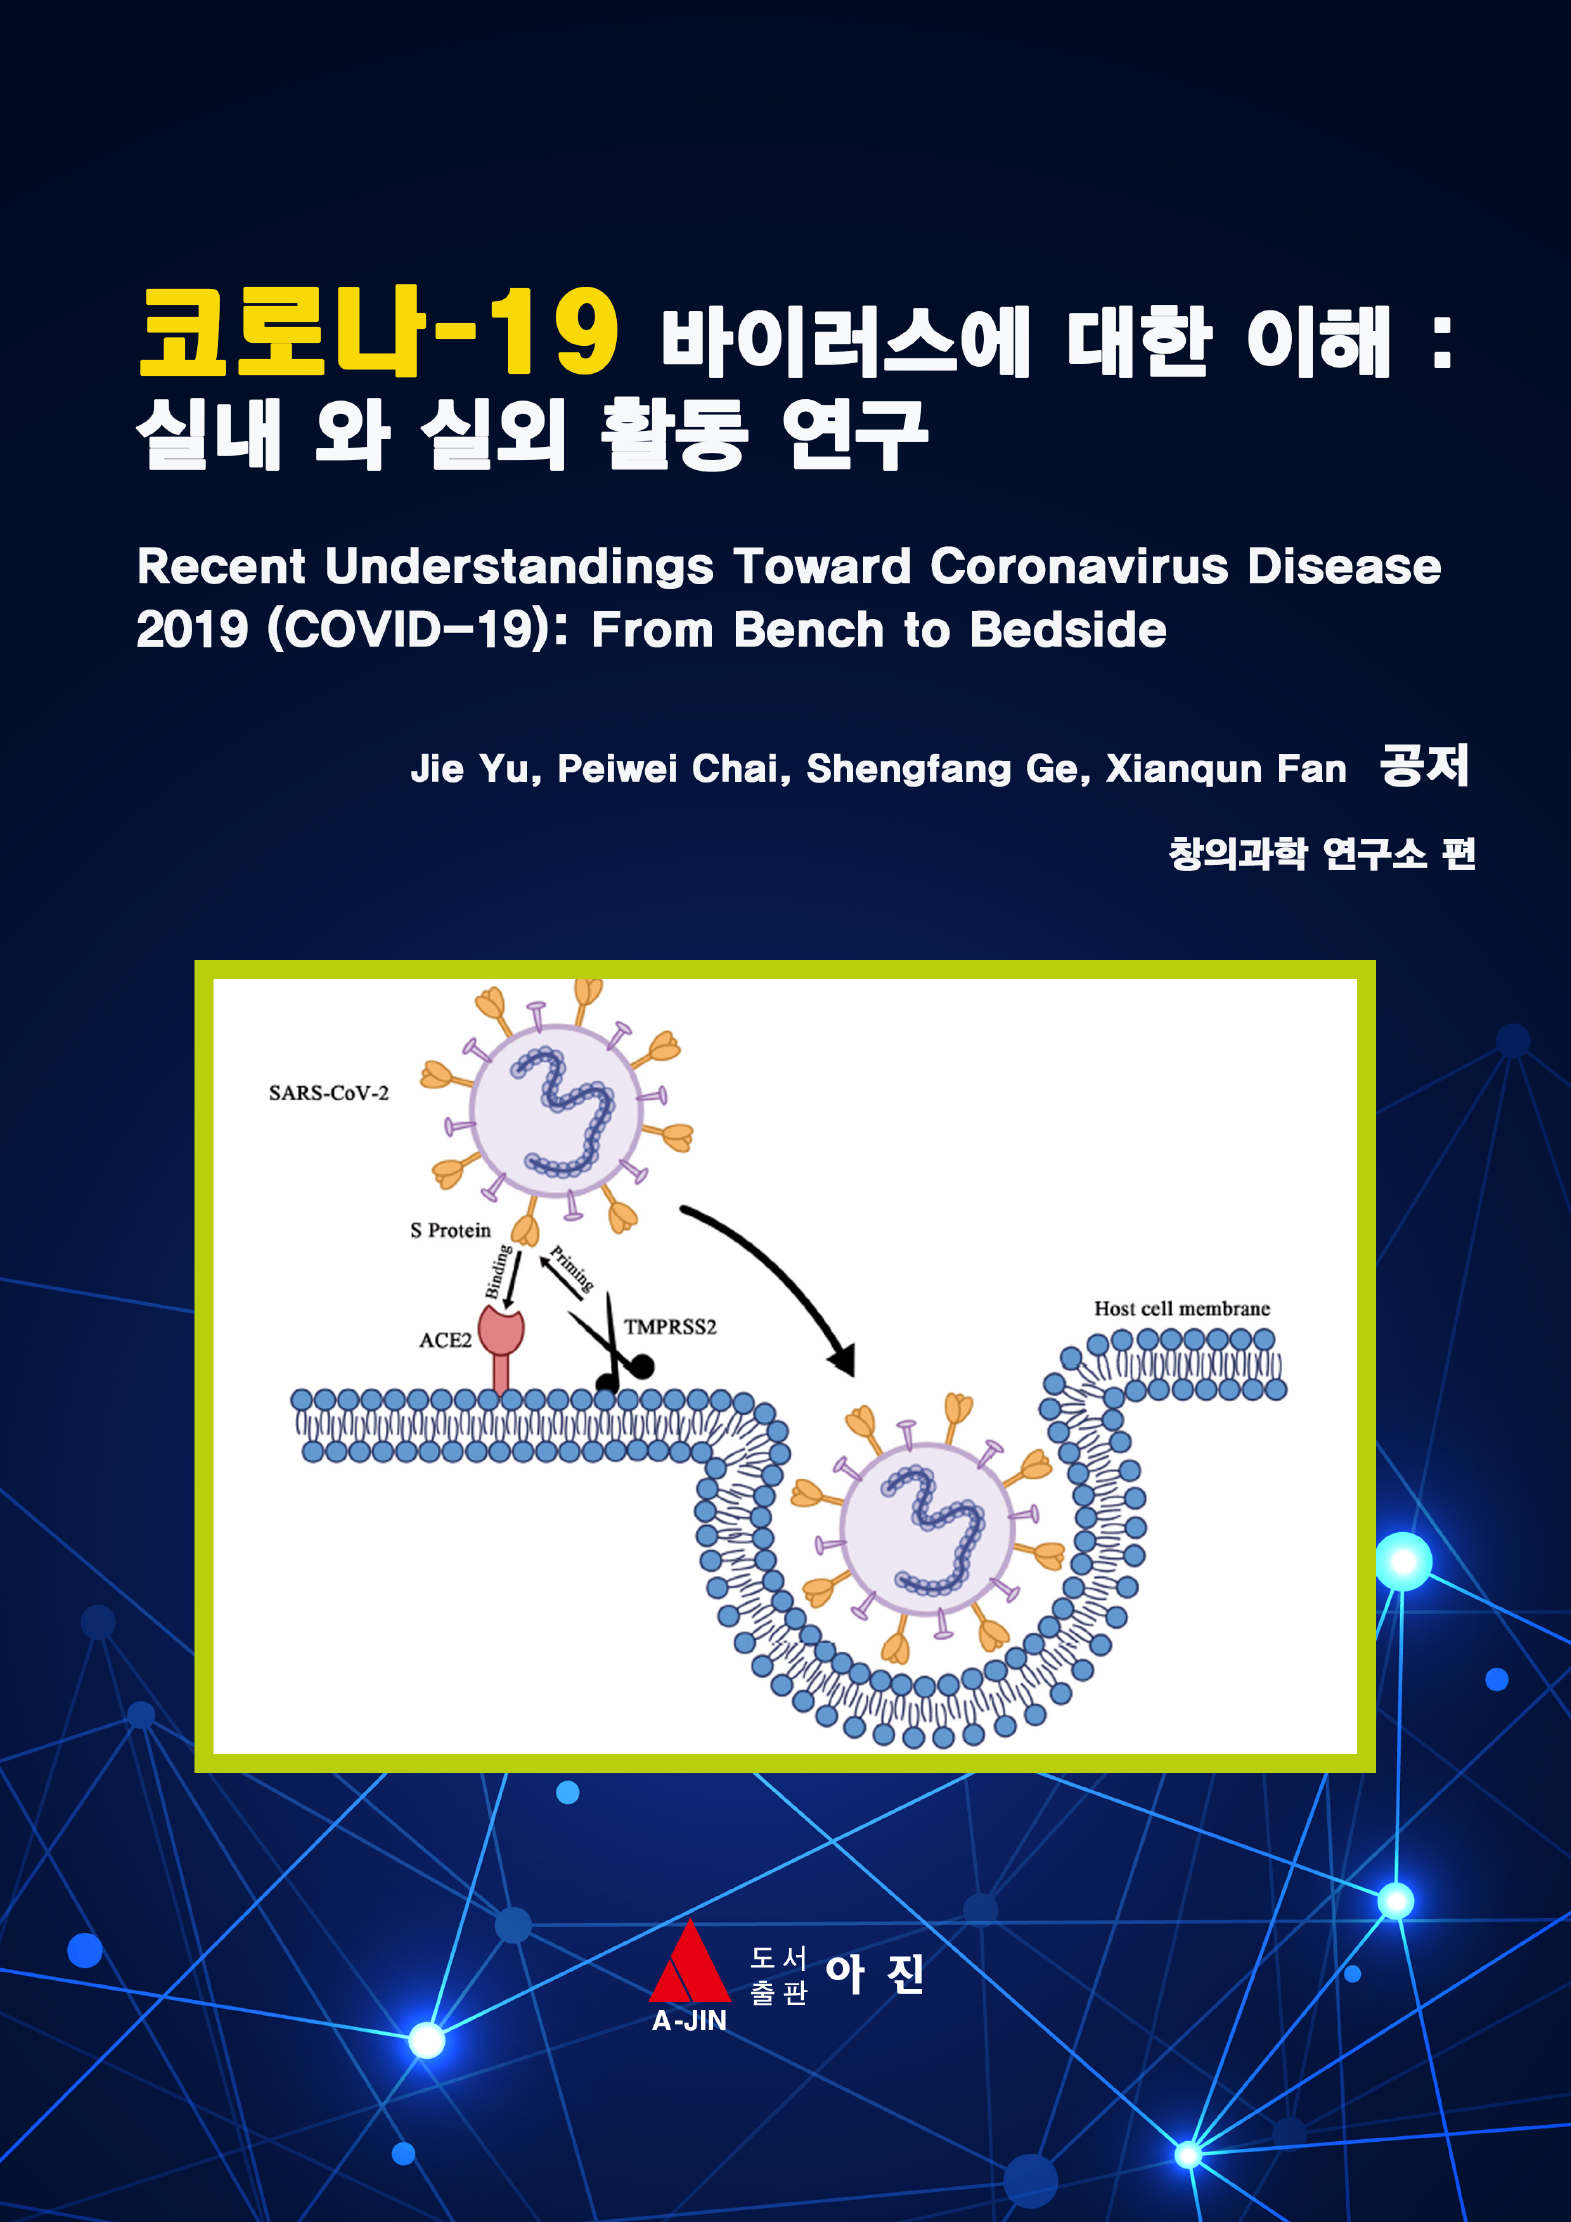 코로나-19 바이러스에 대한 이해 : 실내 와 실외 활동 연구